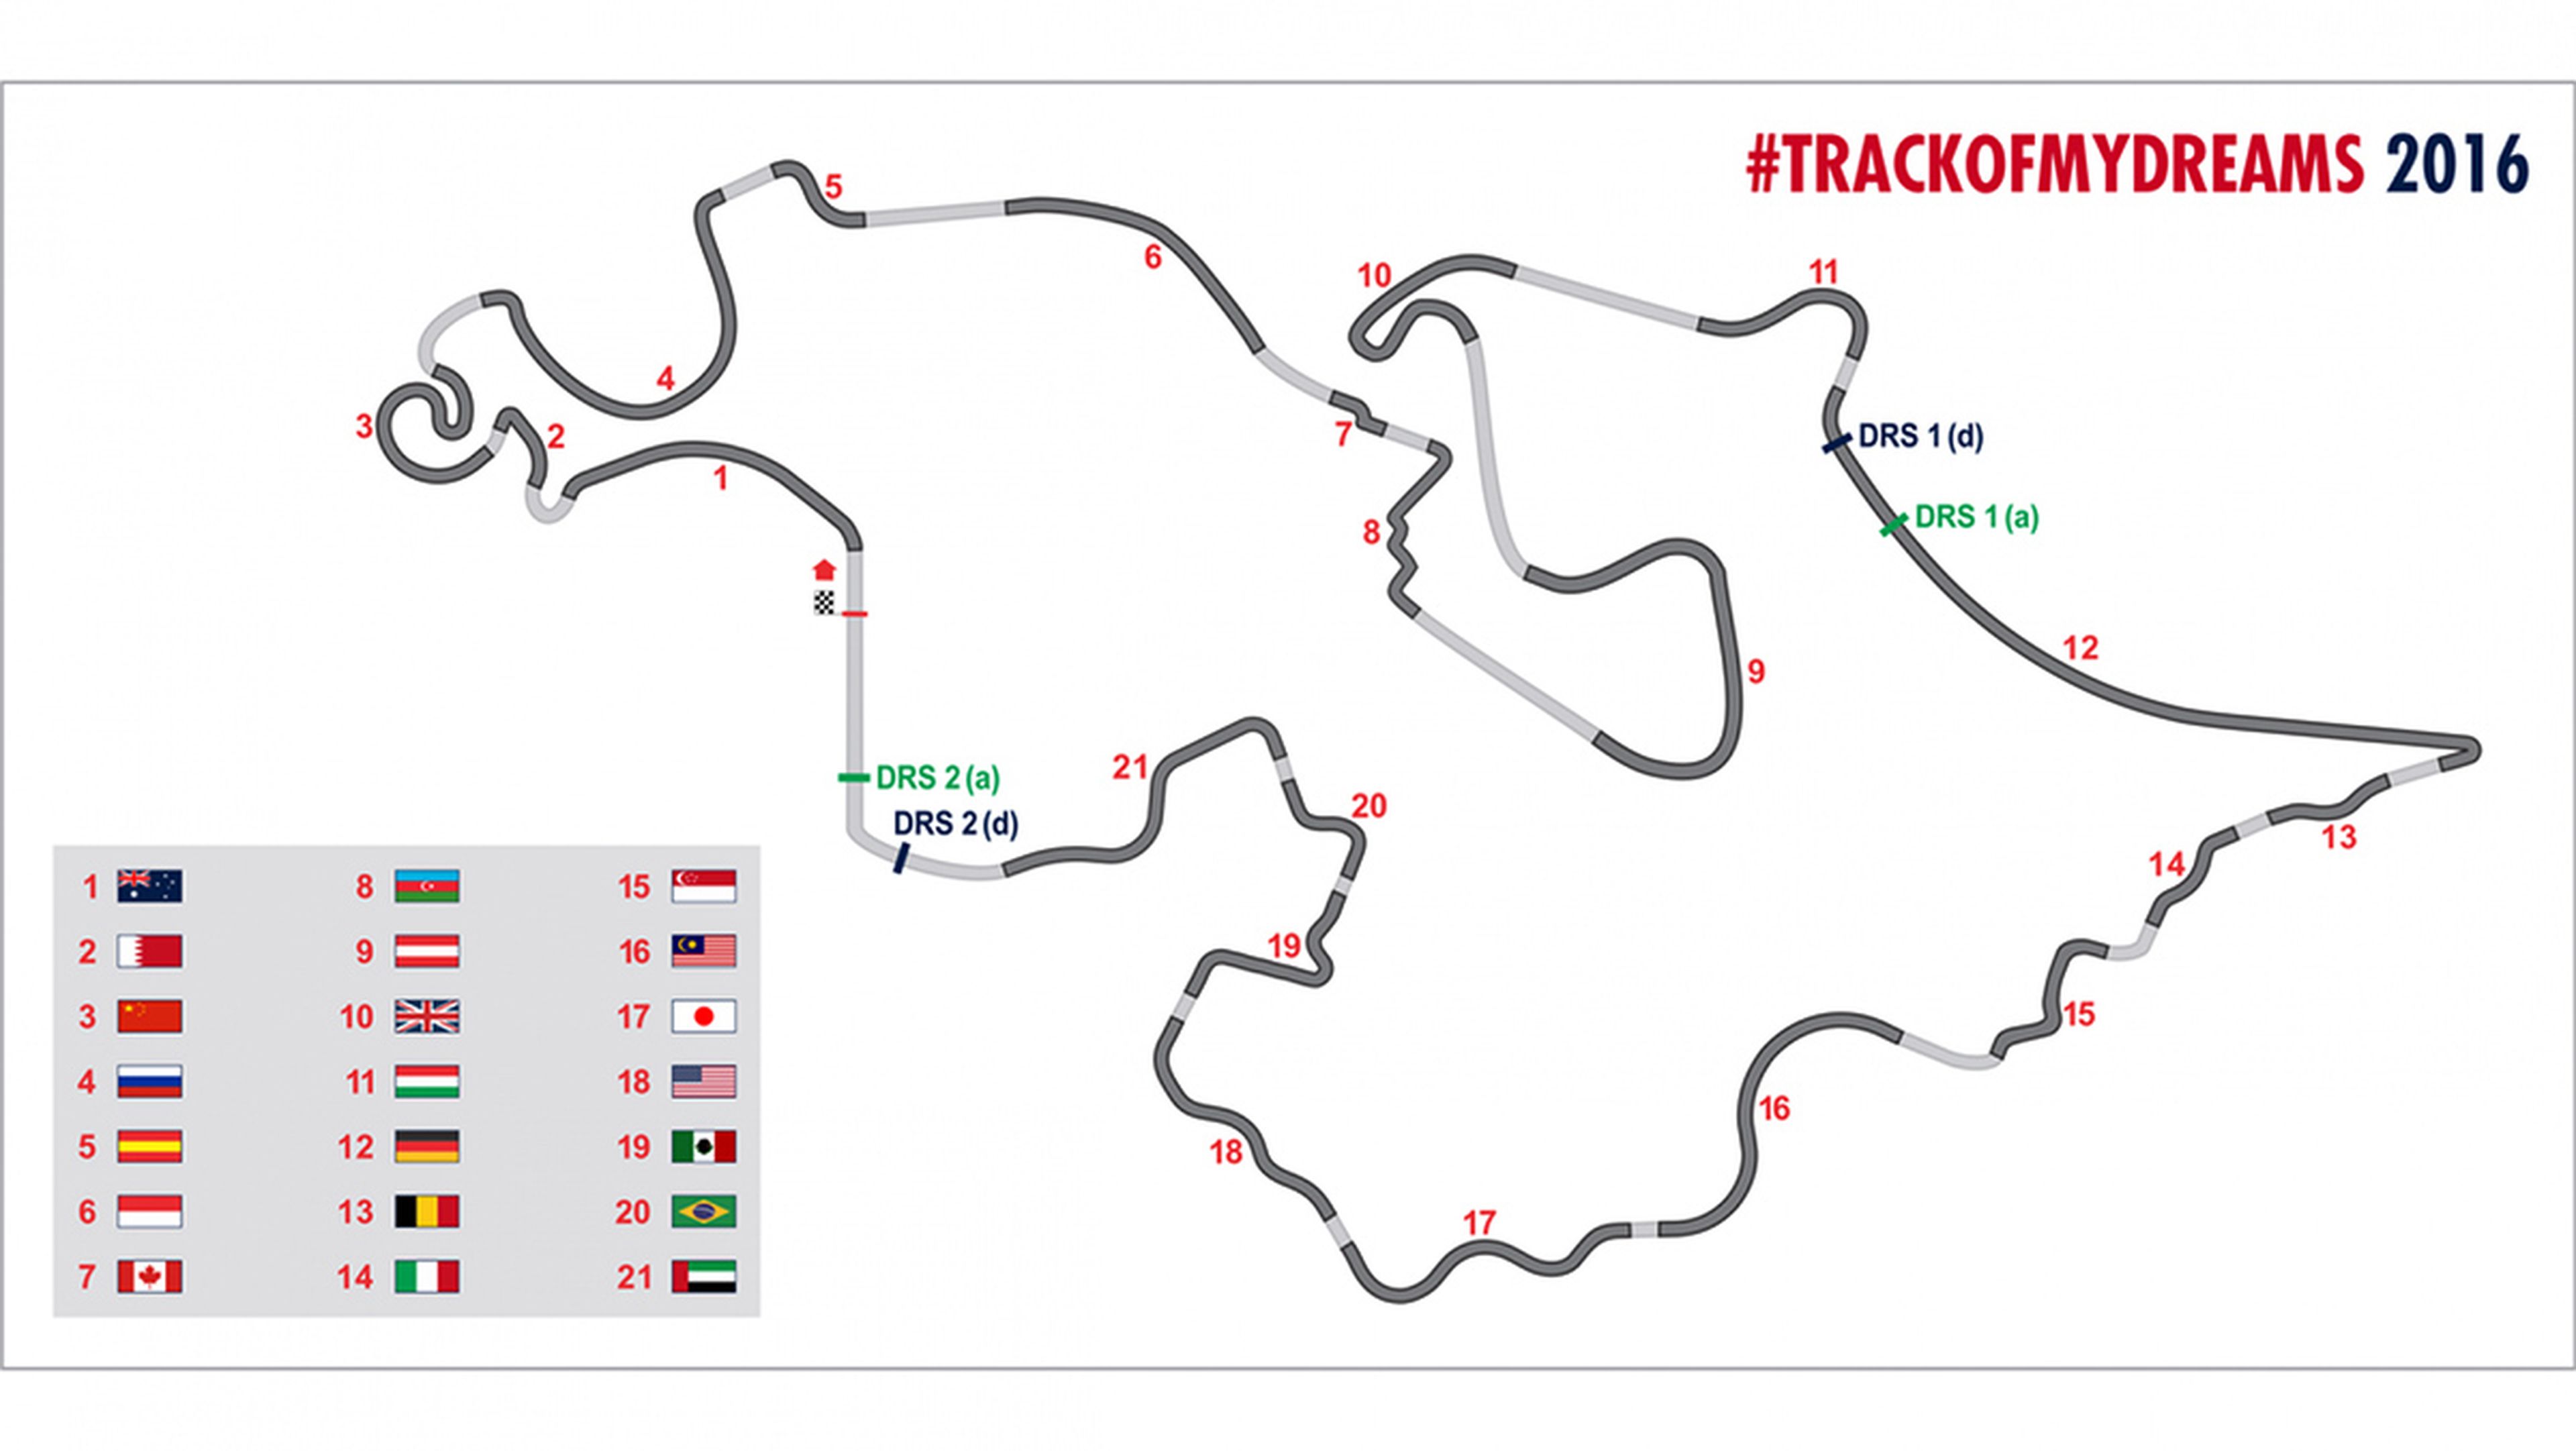 Así es el circuito perfecto de f1 según los seguidores de Toro Rosso